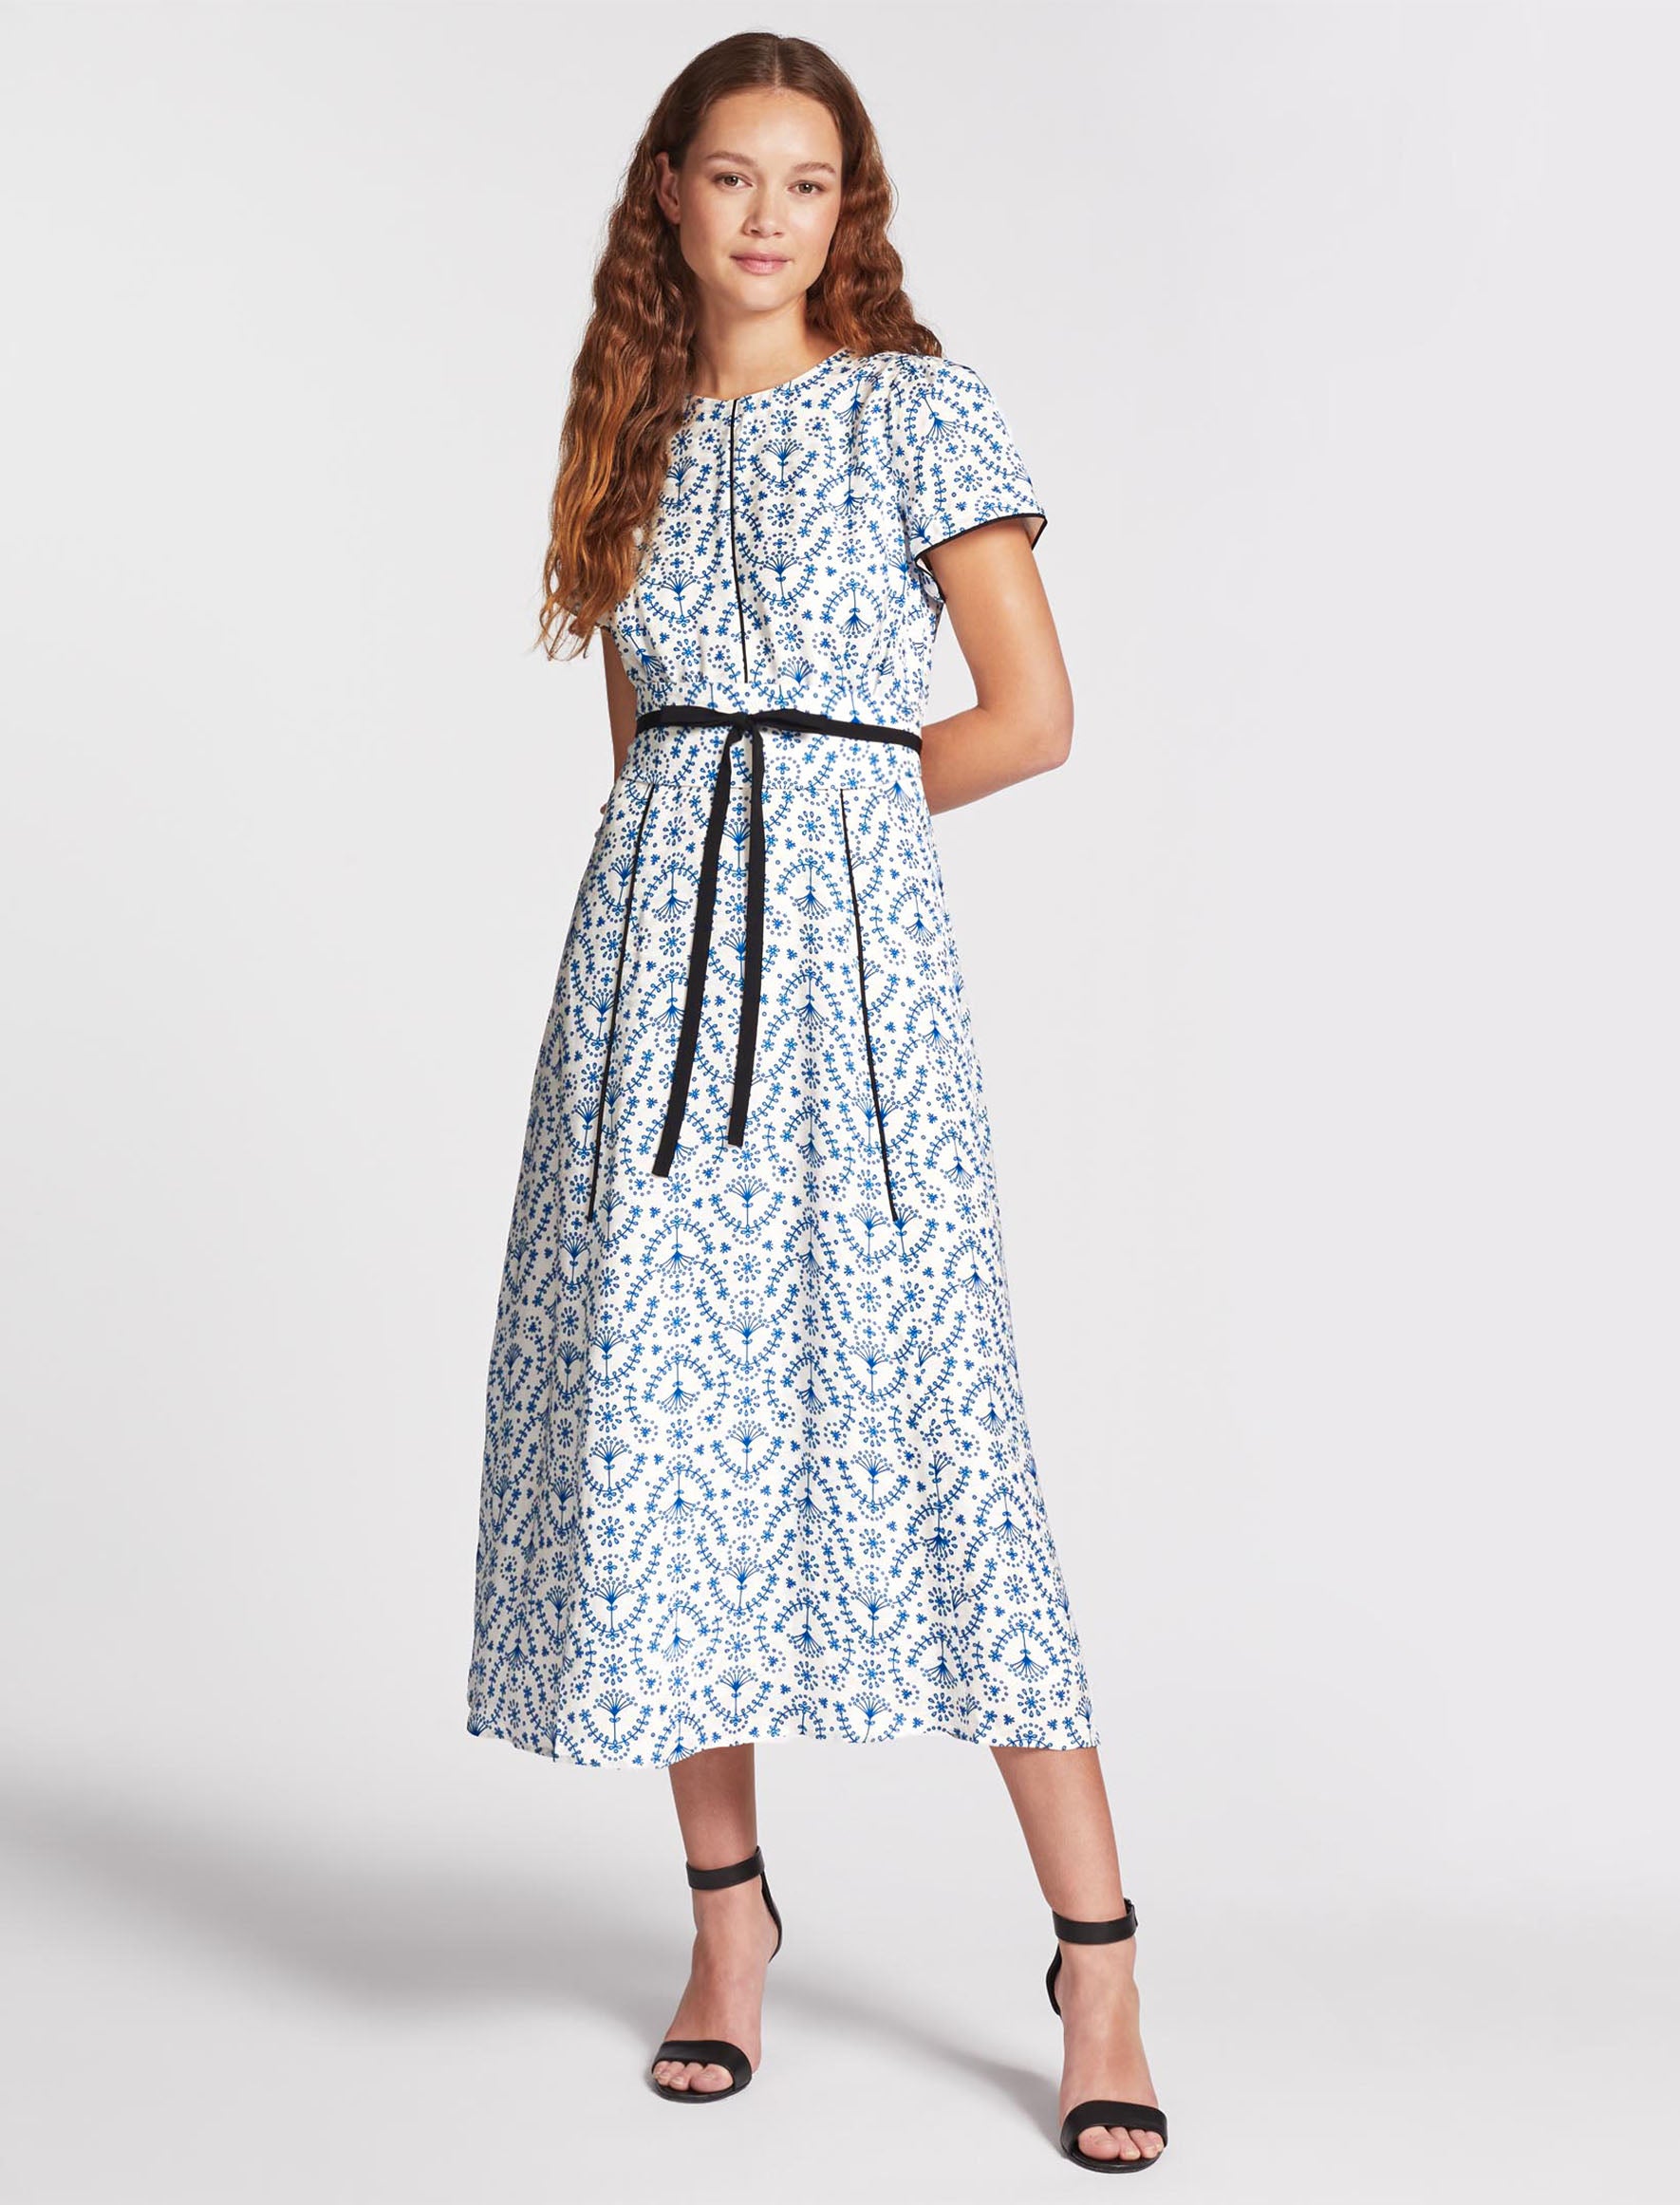 Cefinn Rosie Silk Blend Maxi Dress - White Blue Broderie Anglaise Print